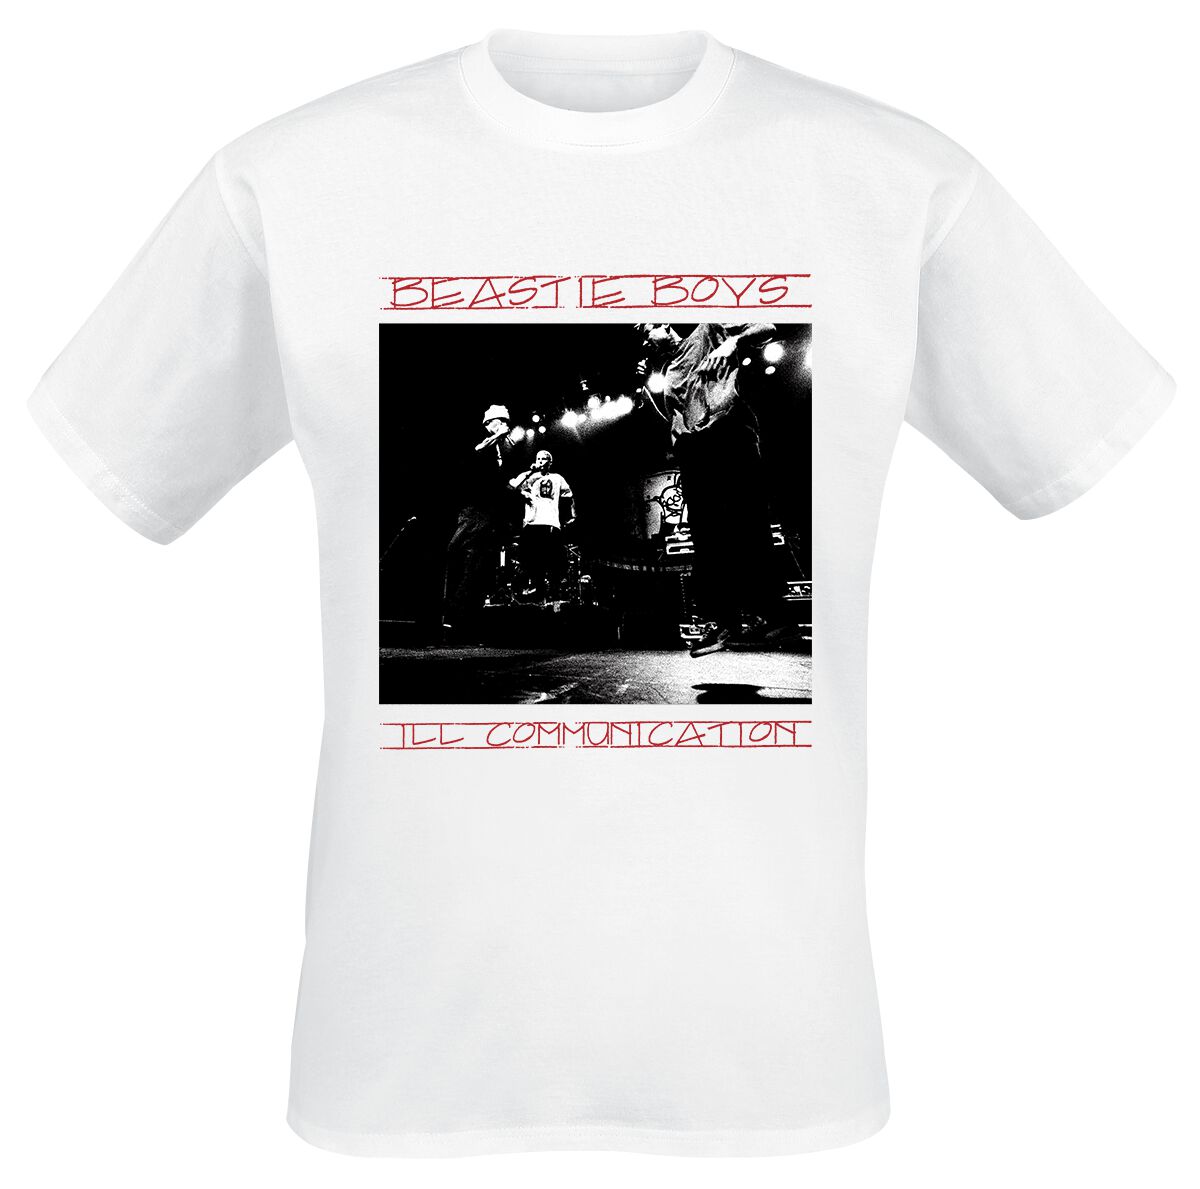 Beastie Boys T-Shirt - III Communication Tracklist - S bis XL - für Männer - Größe XL - weiß  - Lizenziertes Merchandise!